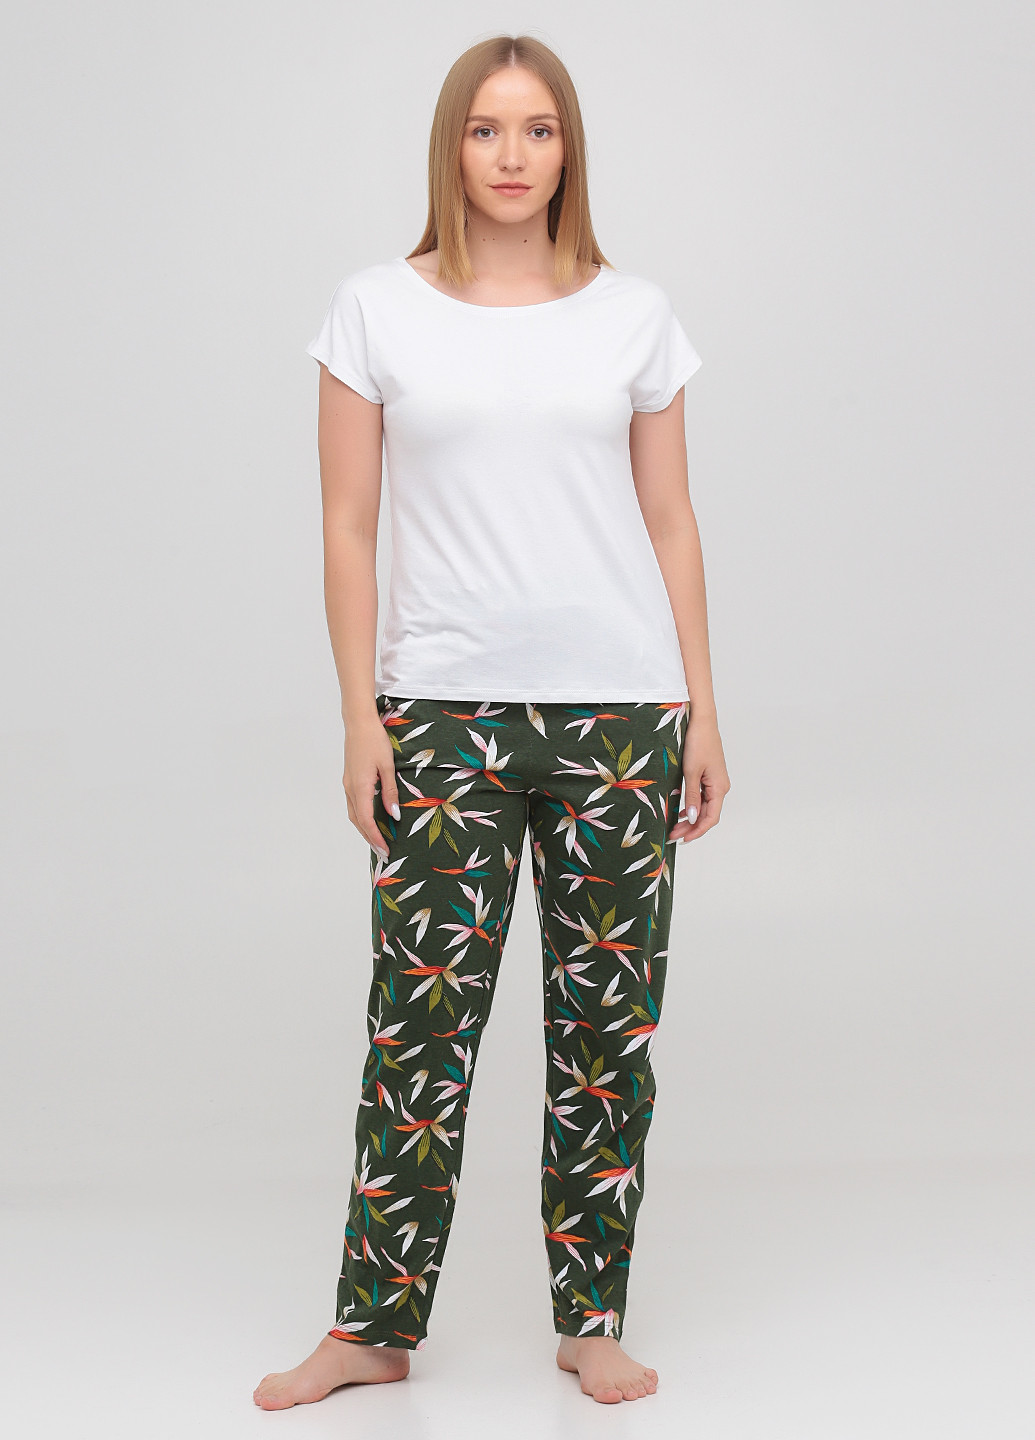 Комбинированная всесезон пижама (футболка, брюки) футболка + брюки Lucci